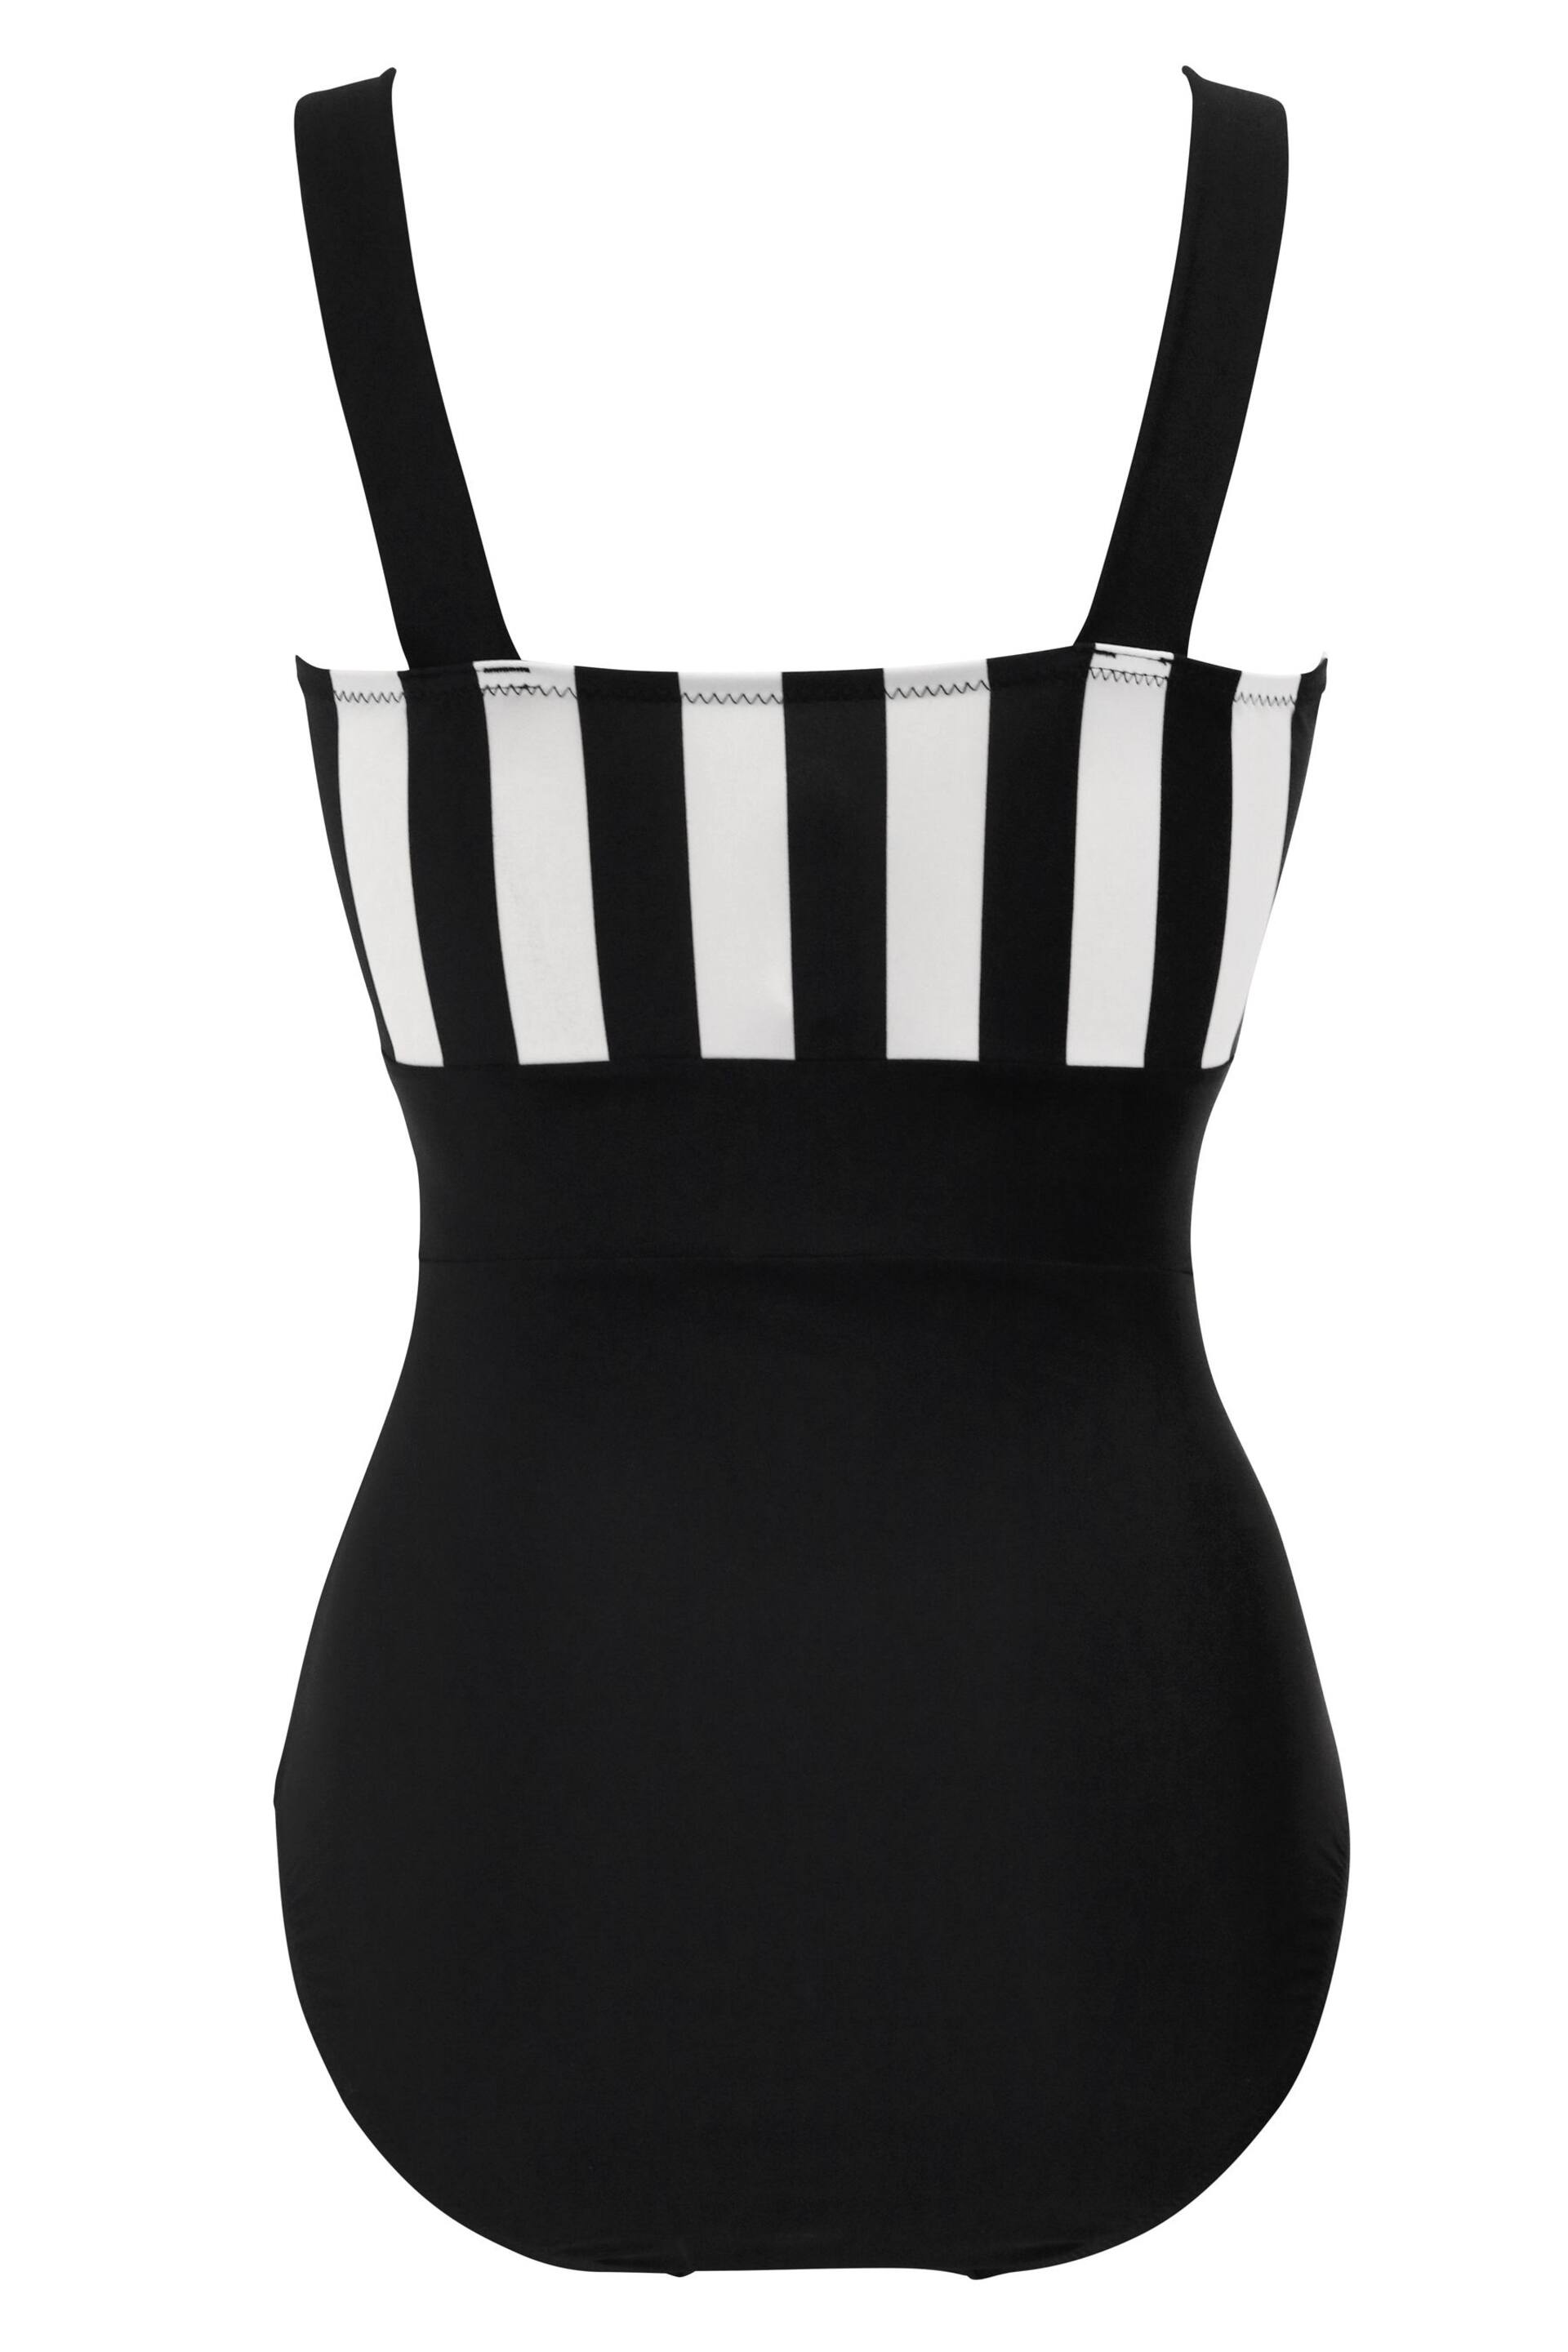 Pour Moi Black/White Colour Block Control Swimsuit - Image 5 of 5